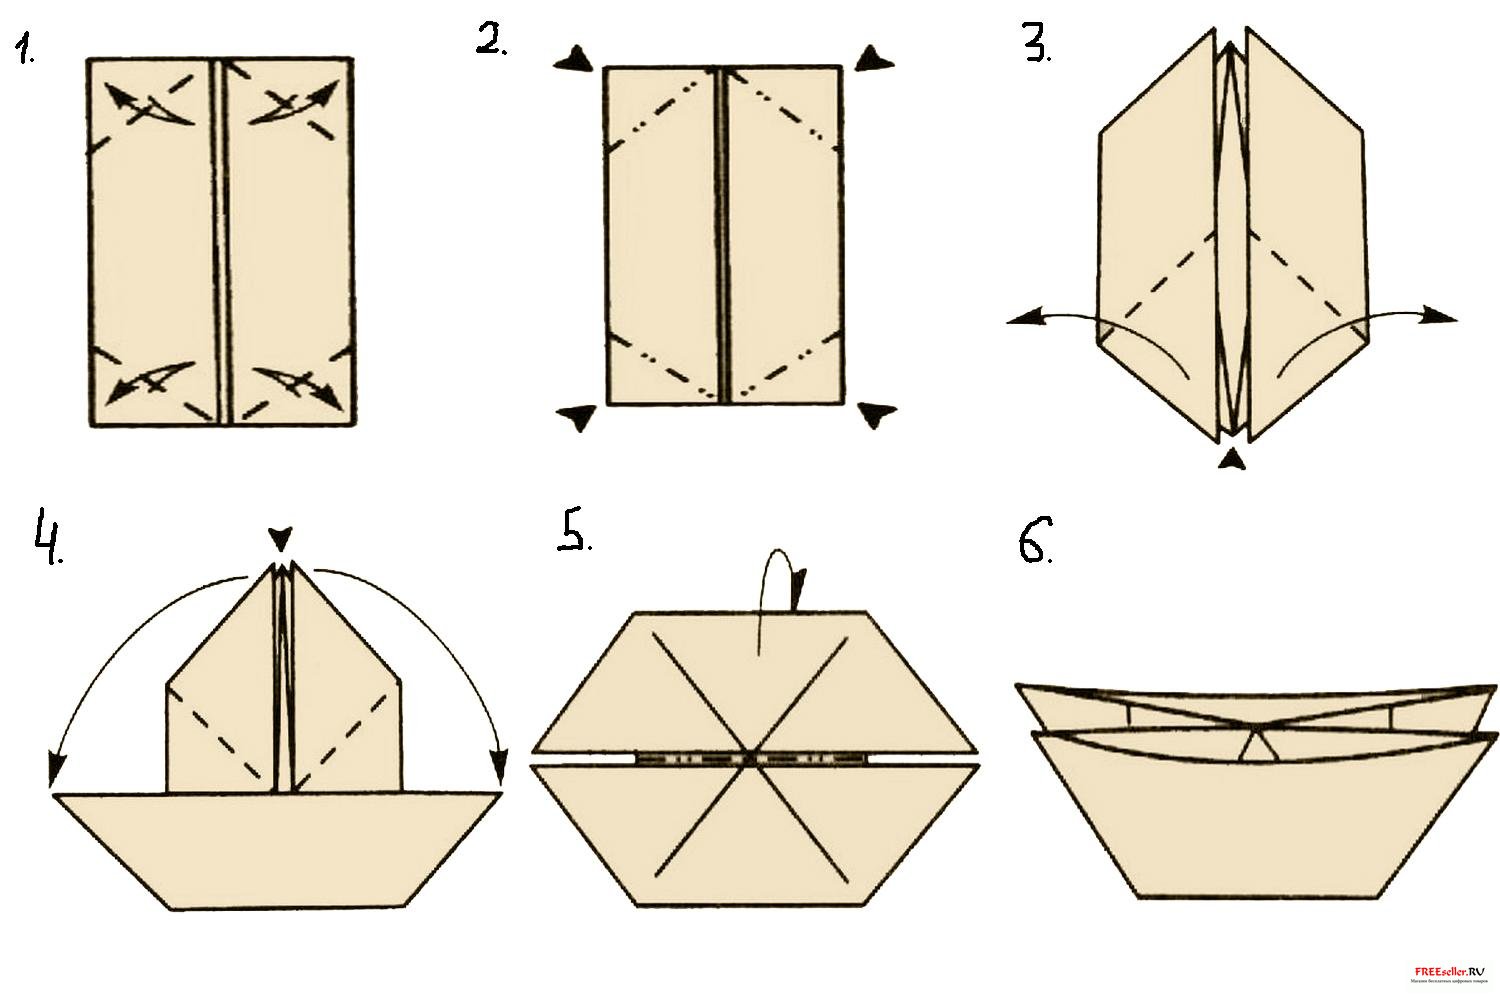 Как сделать кораблик поэтапно. Базовая форма катамаран оригами. Базовая форма оригами ка. Базовая Фора катамаранм. Базовая форма катамаран оригами схема.